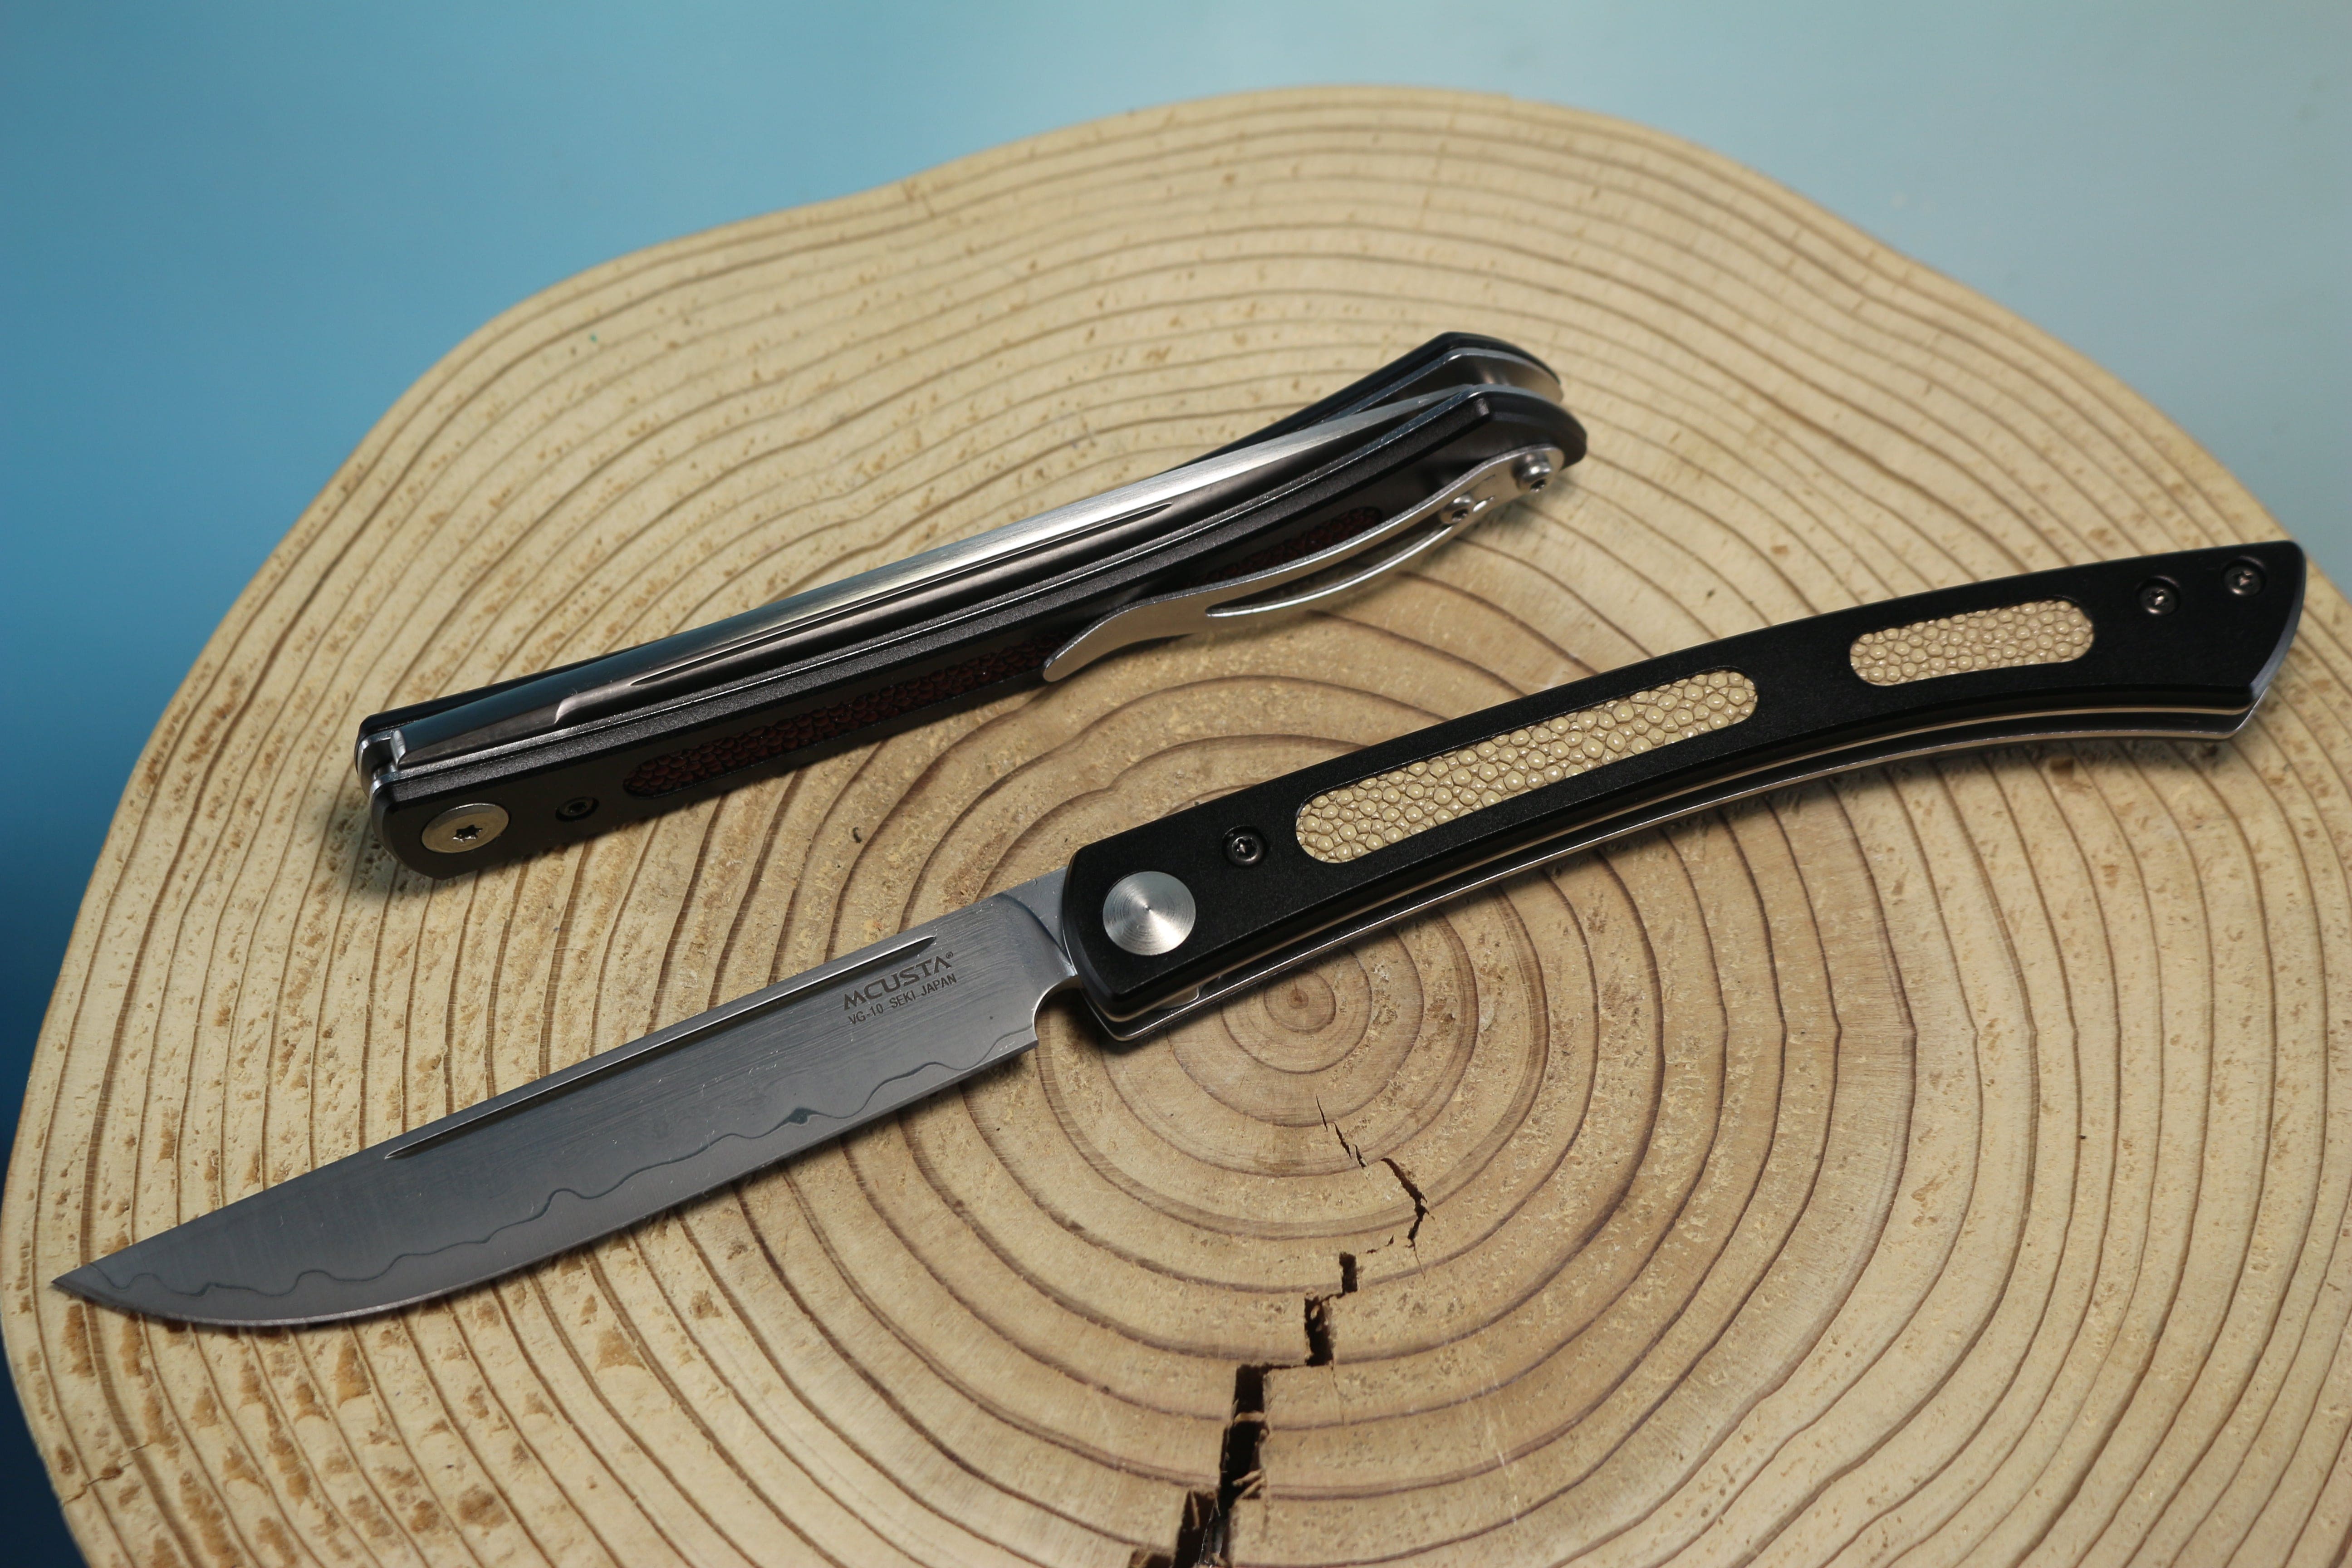 Elegant Japanese Pocketknife, Steak Knife